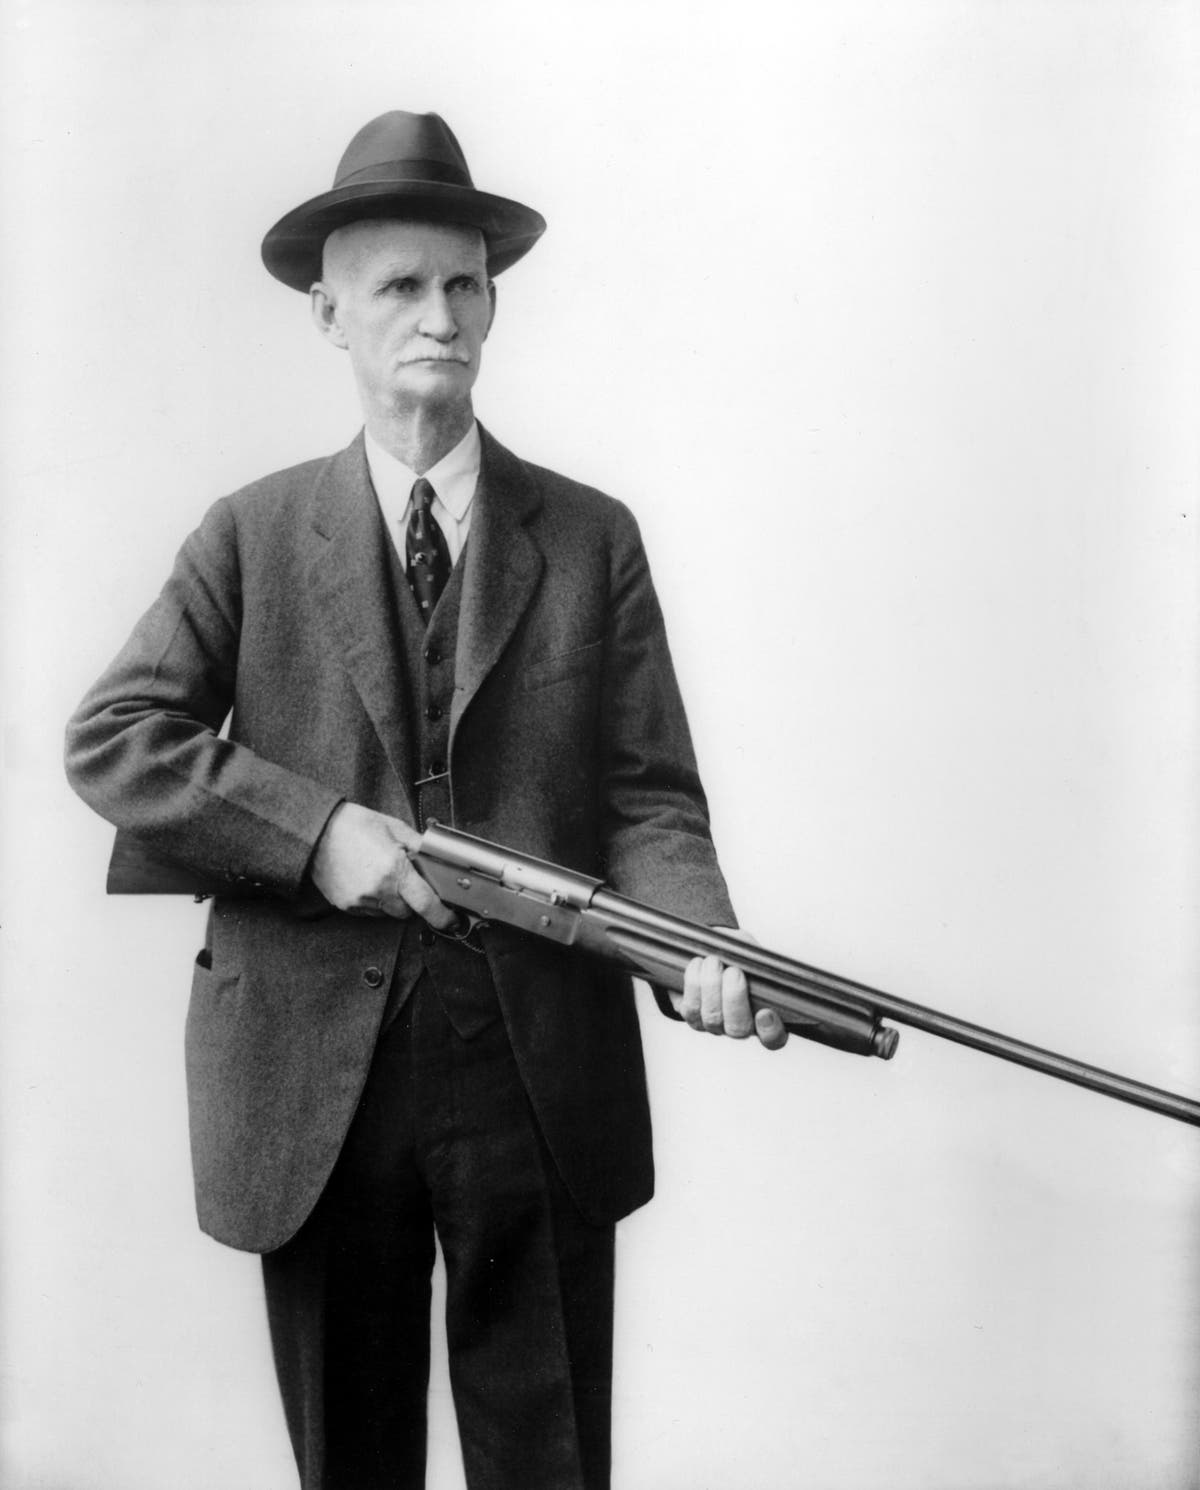 John Moses Browning holding his Automatic 5 shotgun